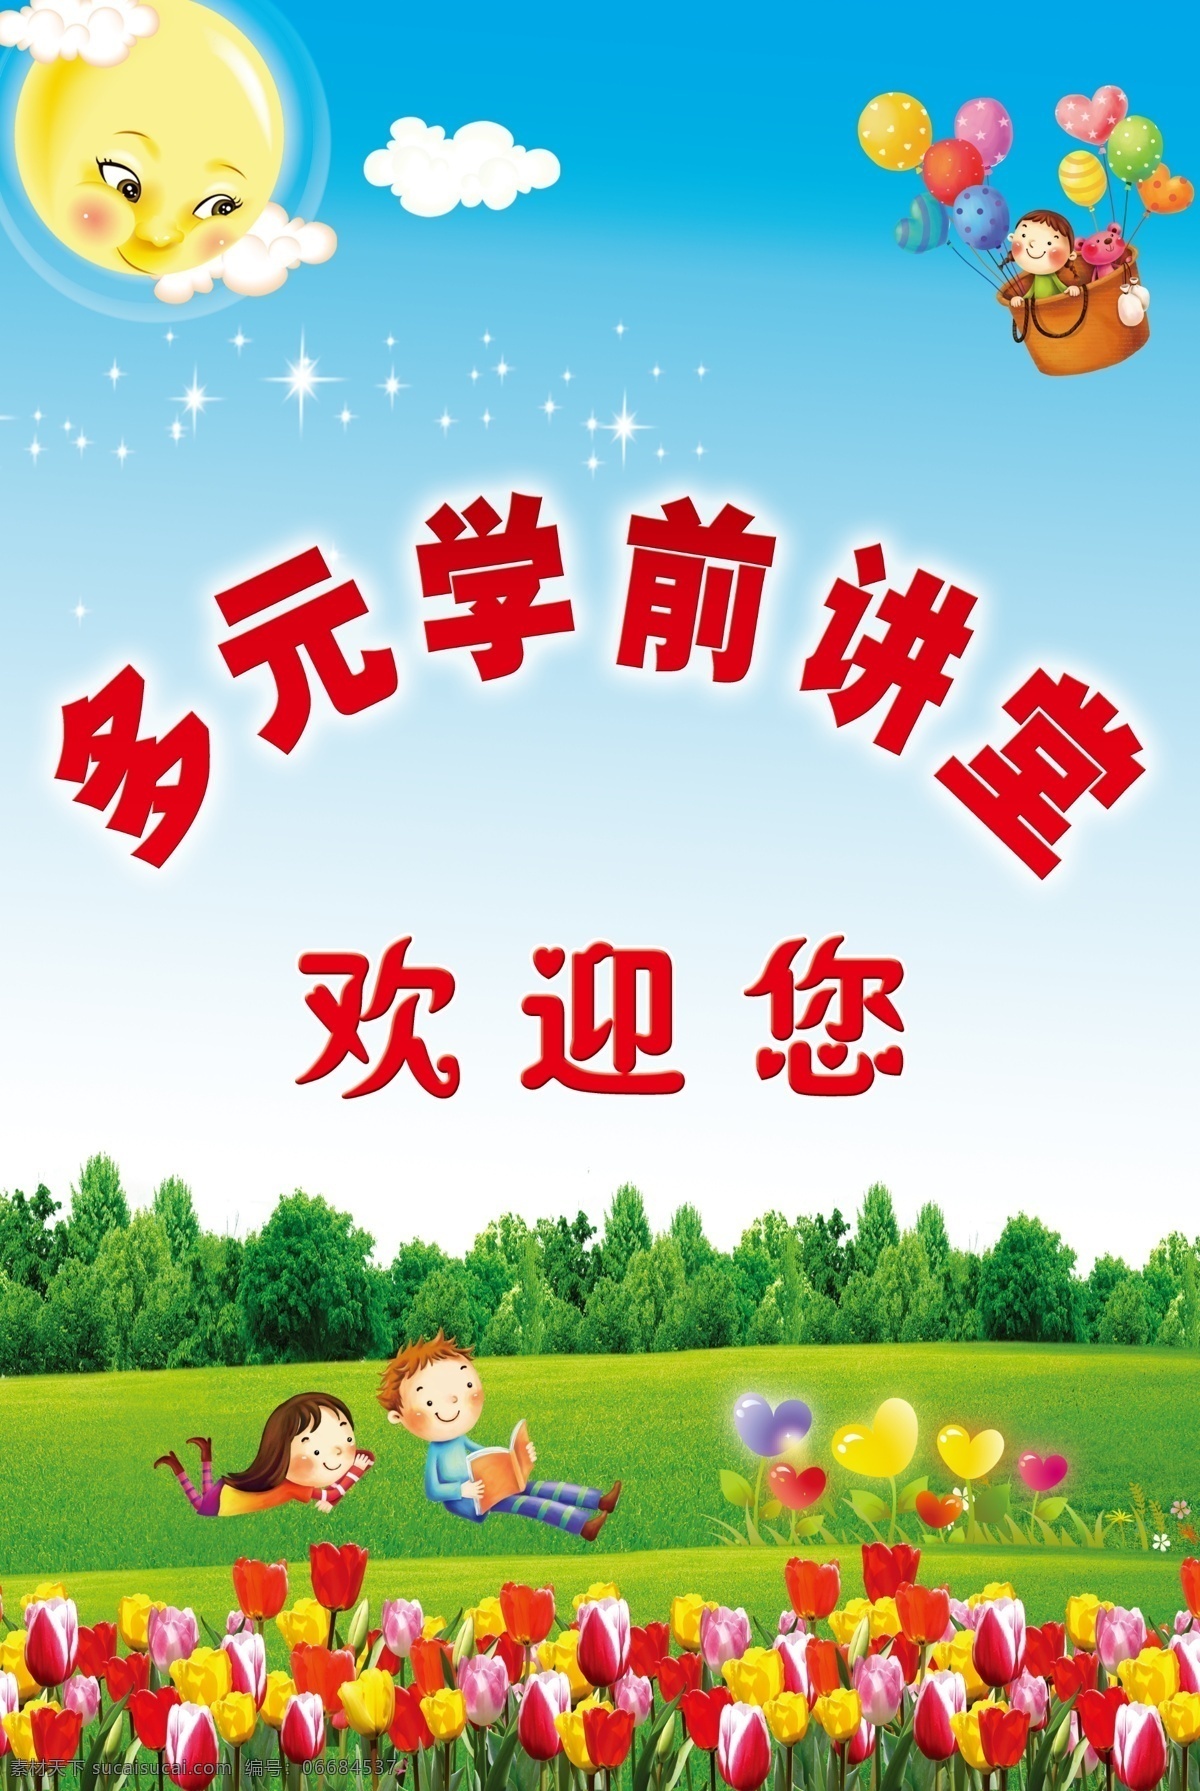 蓝色背景 幼儿园展板 欢迎您 小孩读书 花草 树 小孩气球 太阳 分层